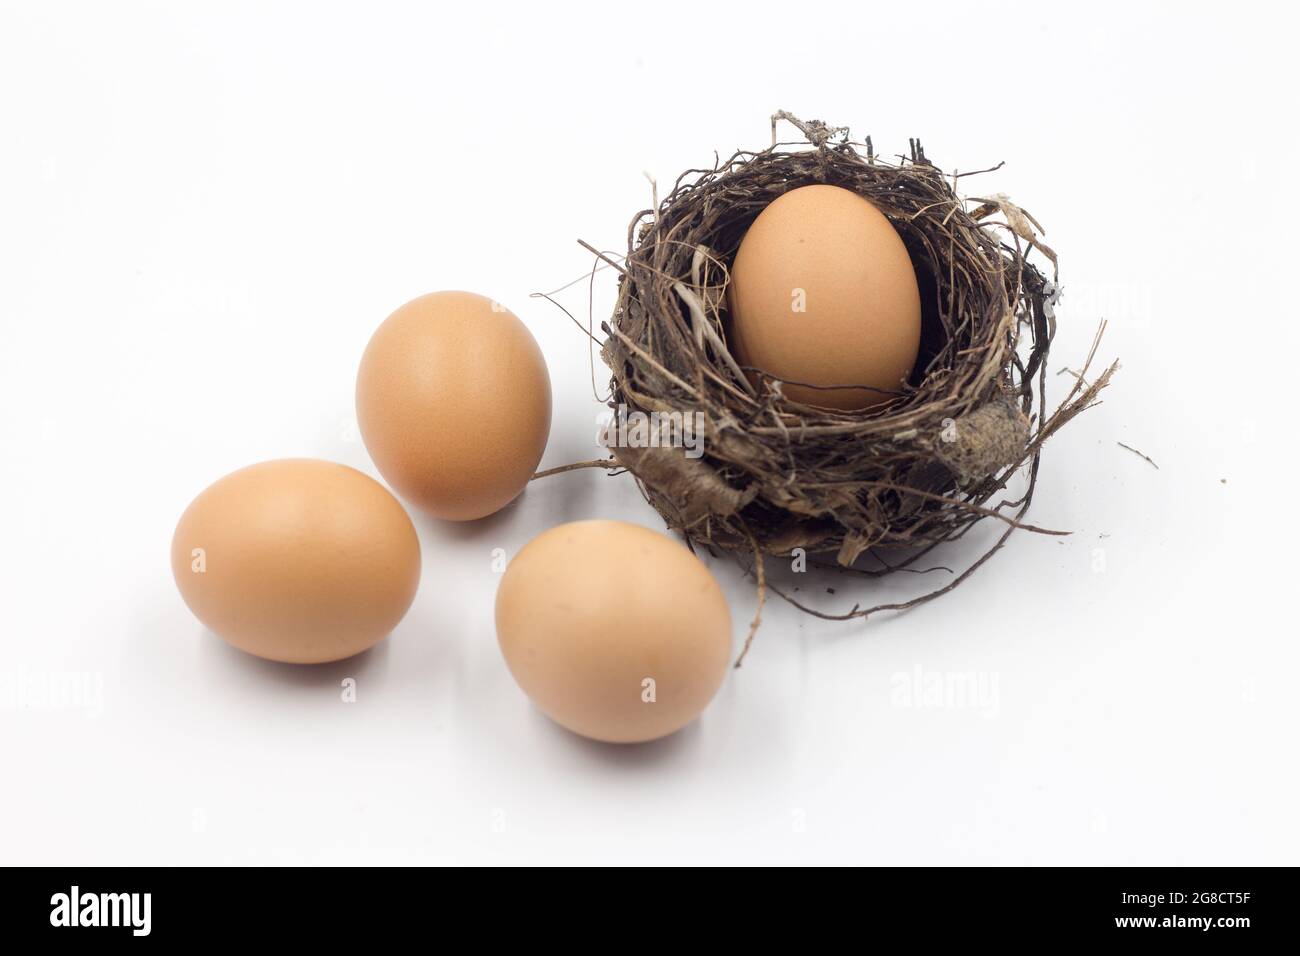 Eier in einem Nest, das auf einem weißen Hintergrund platziert ist, isolieren Stockfoto